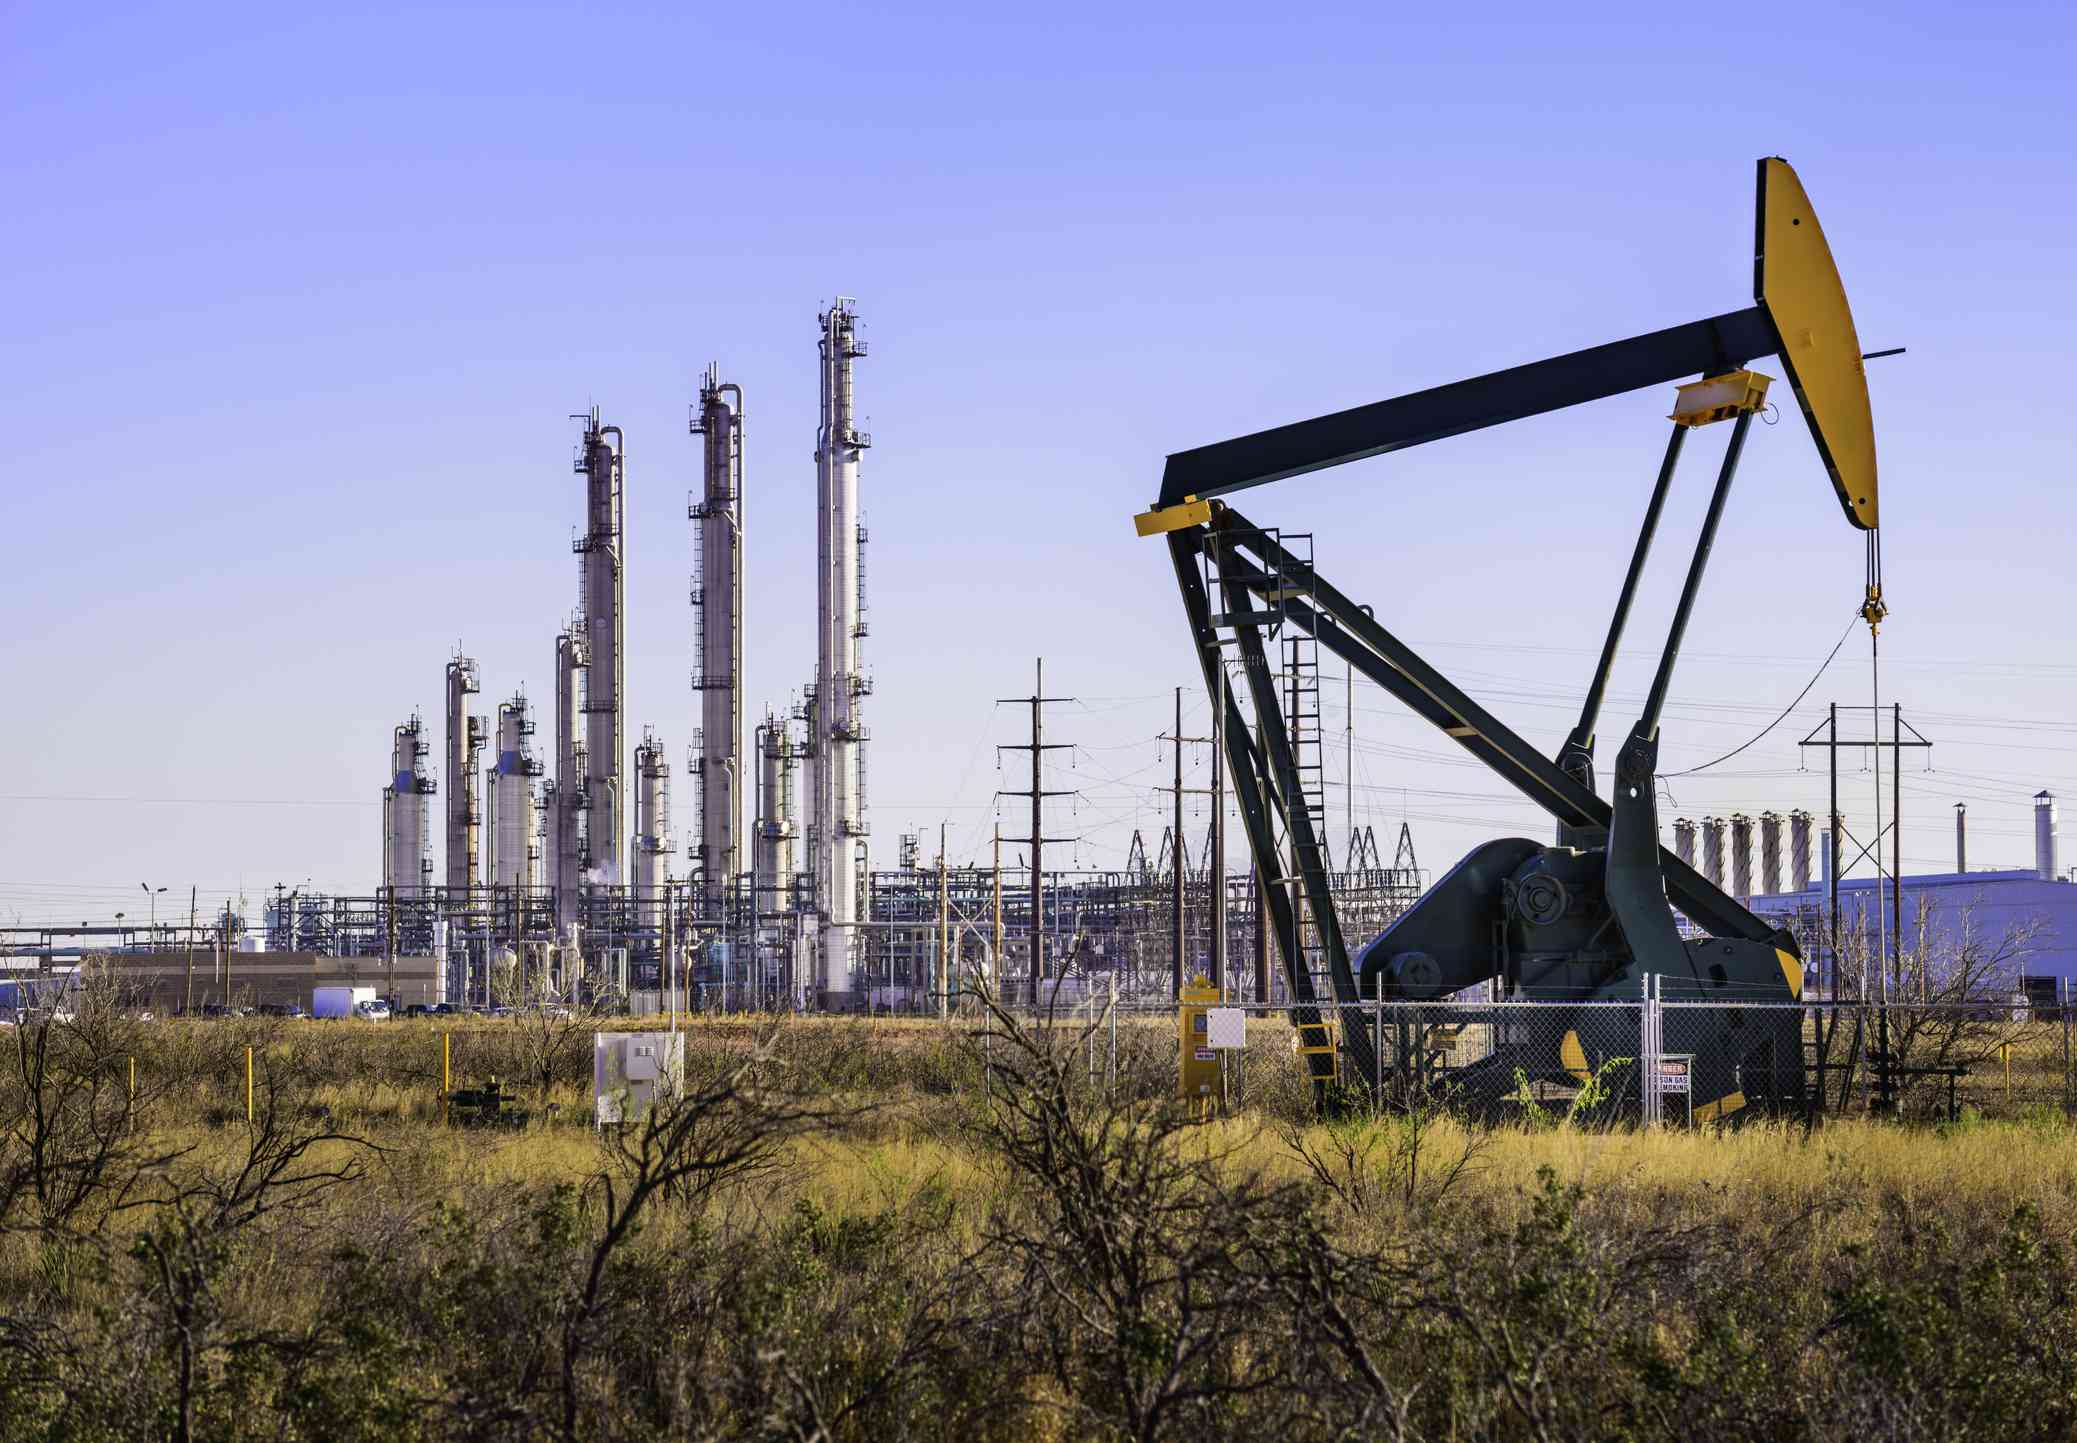 德克萨斯州西部的抽油机(井架)和炼油厂